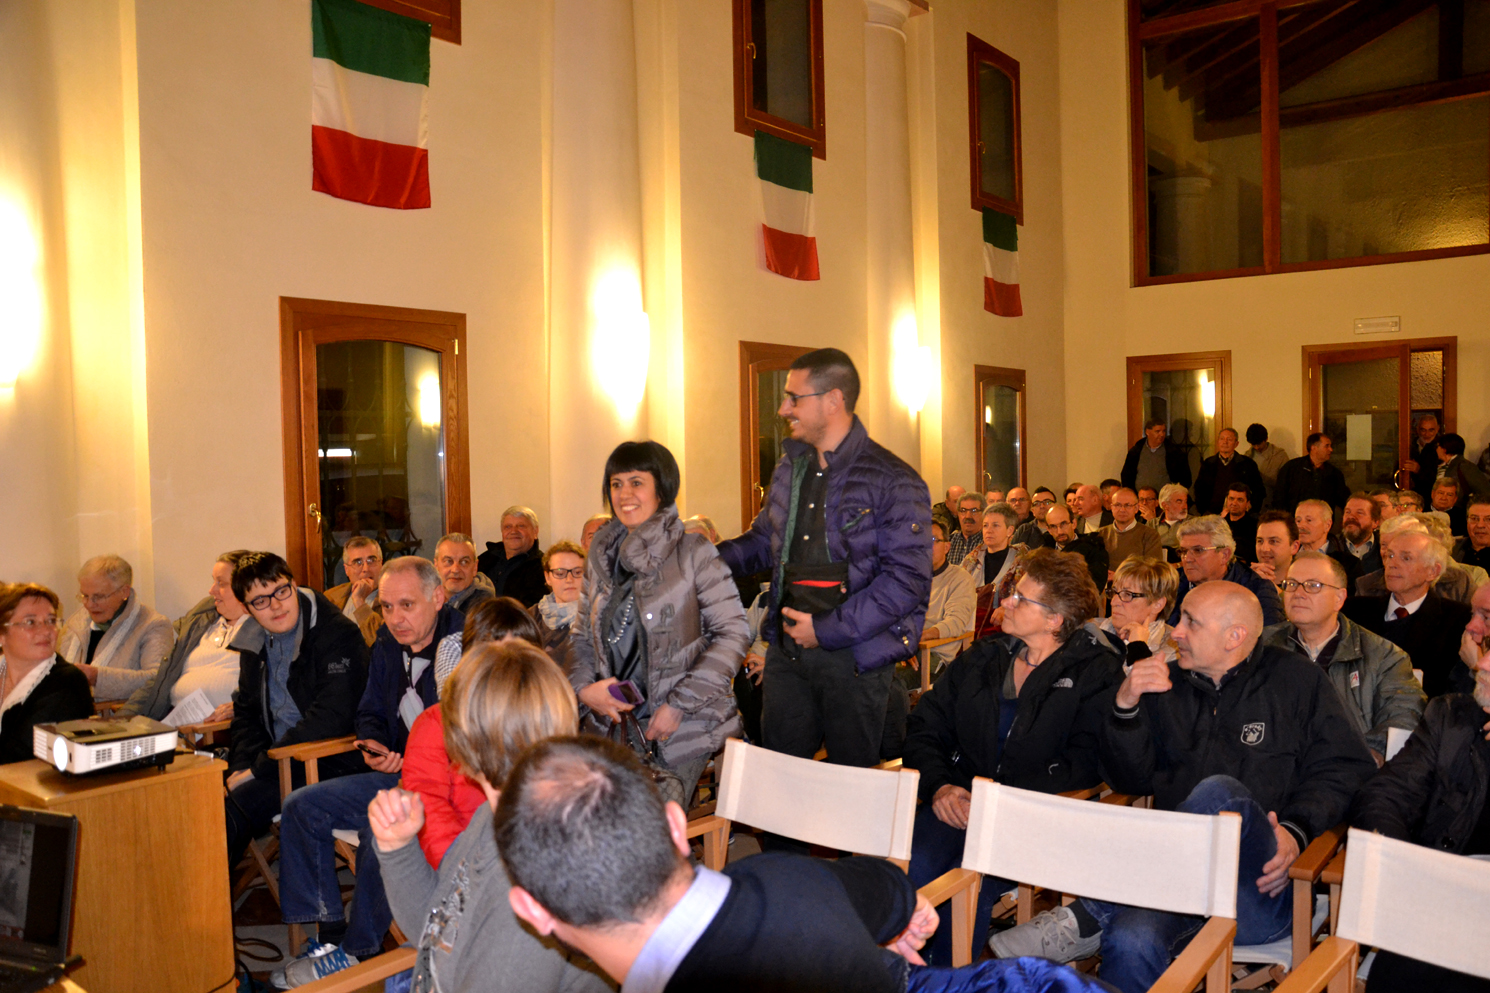 07 - arrivo Manuela Cabboi col marito Sandro e la figlia Gaia tra la sorpresa del pubblico che si domanda chi siano.JPG